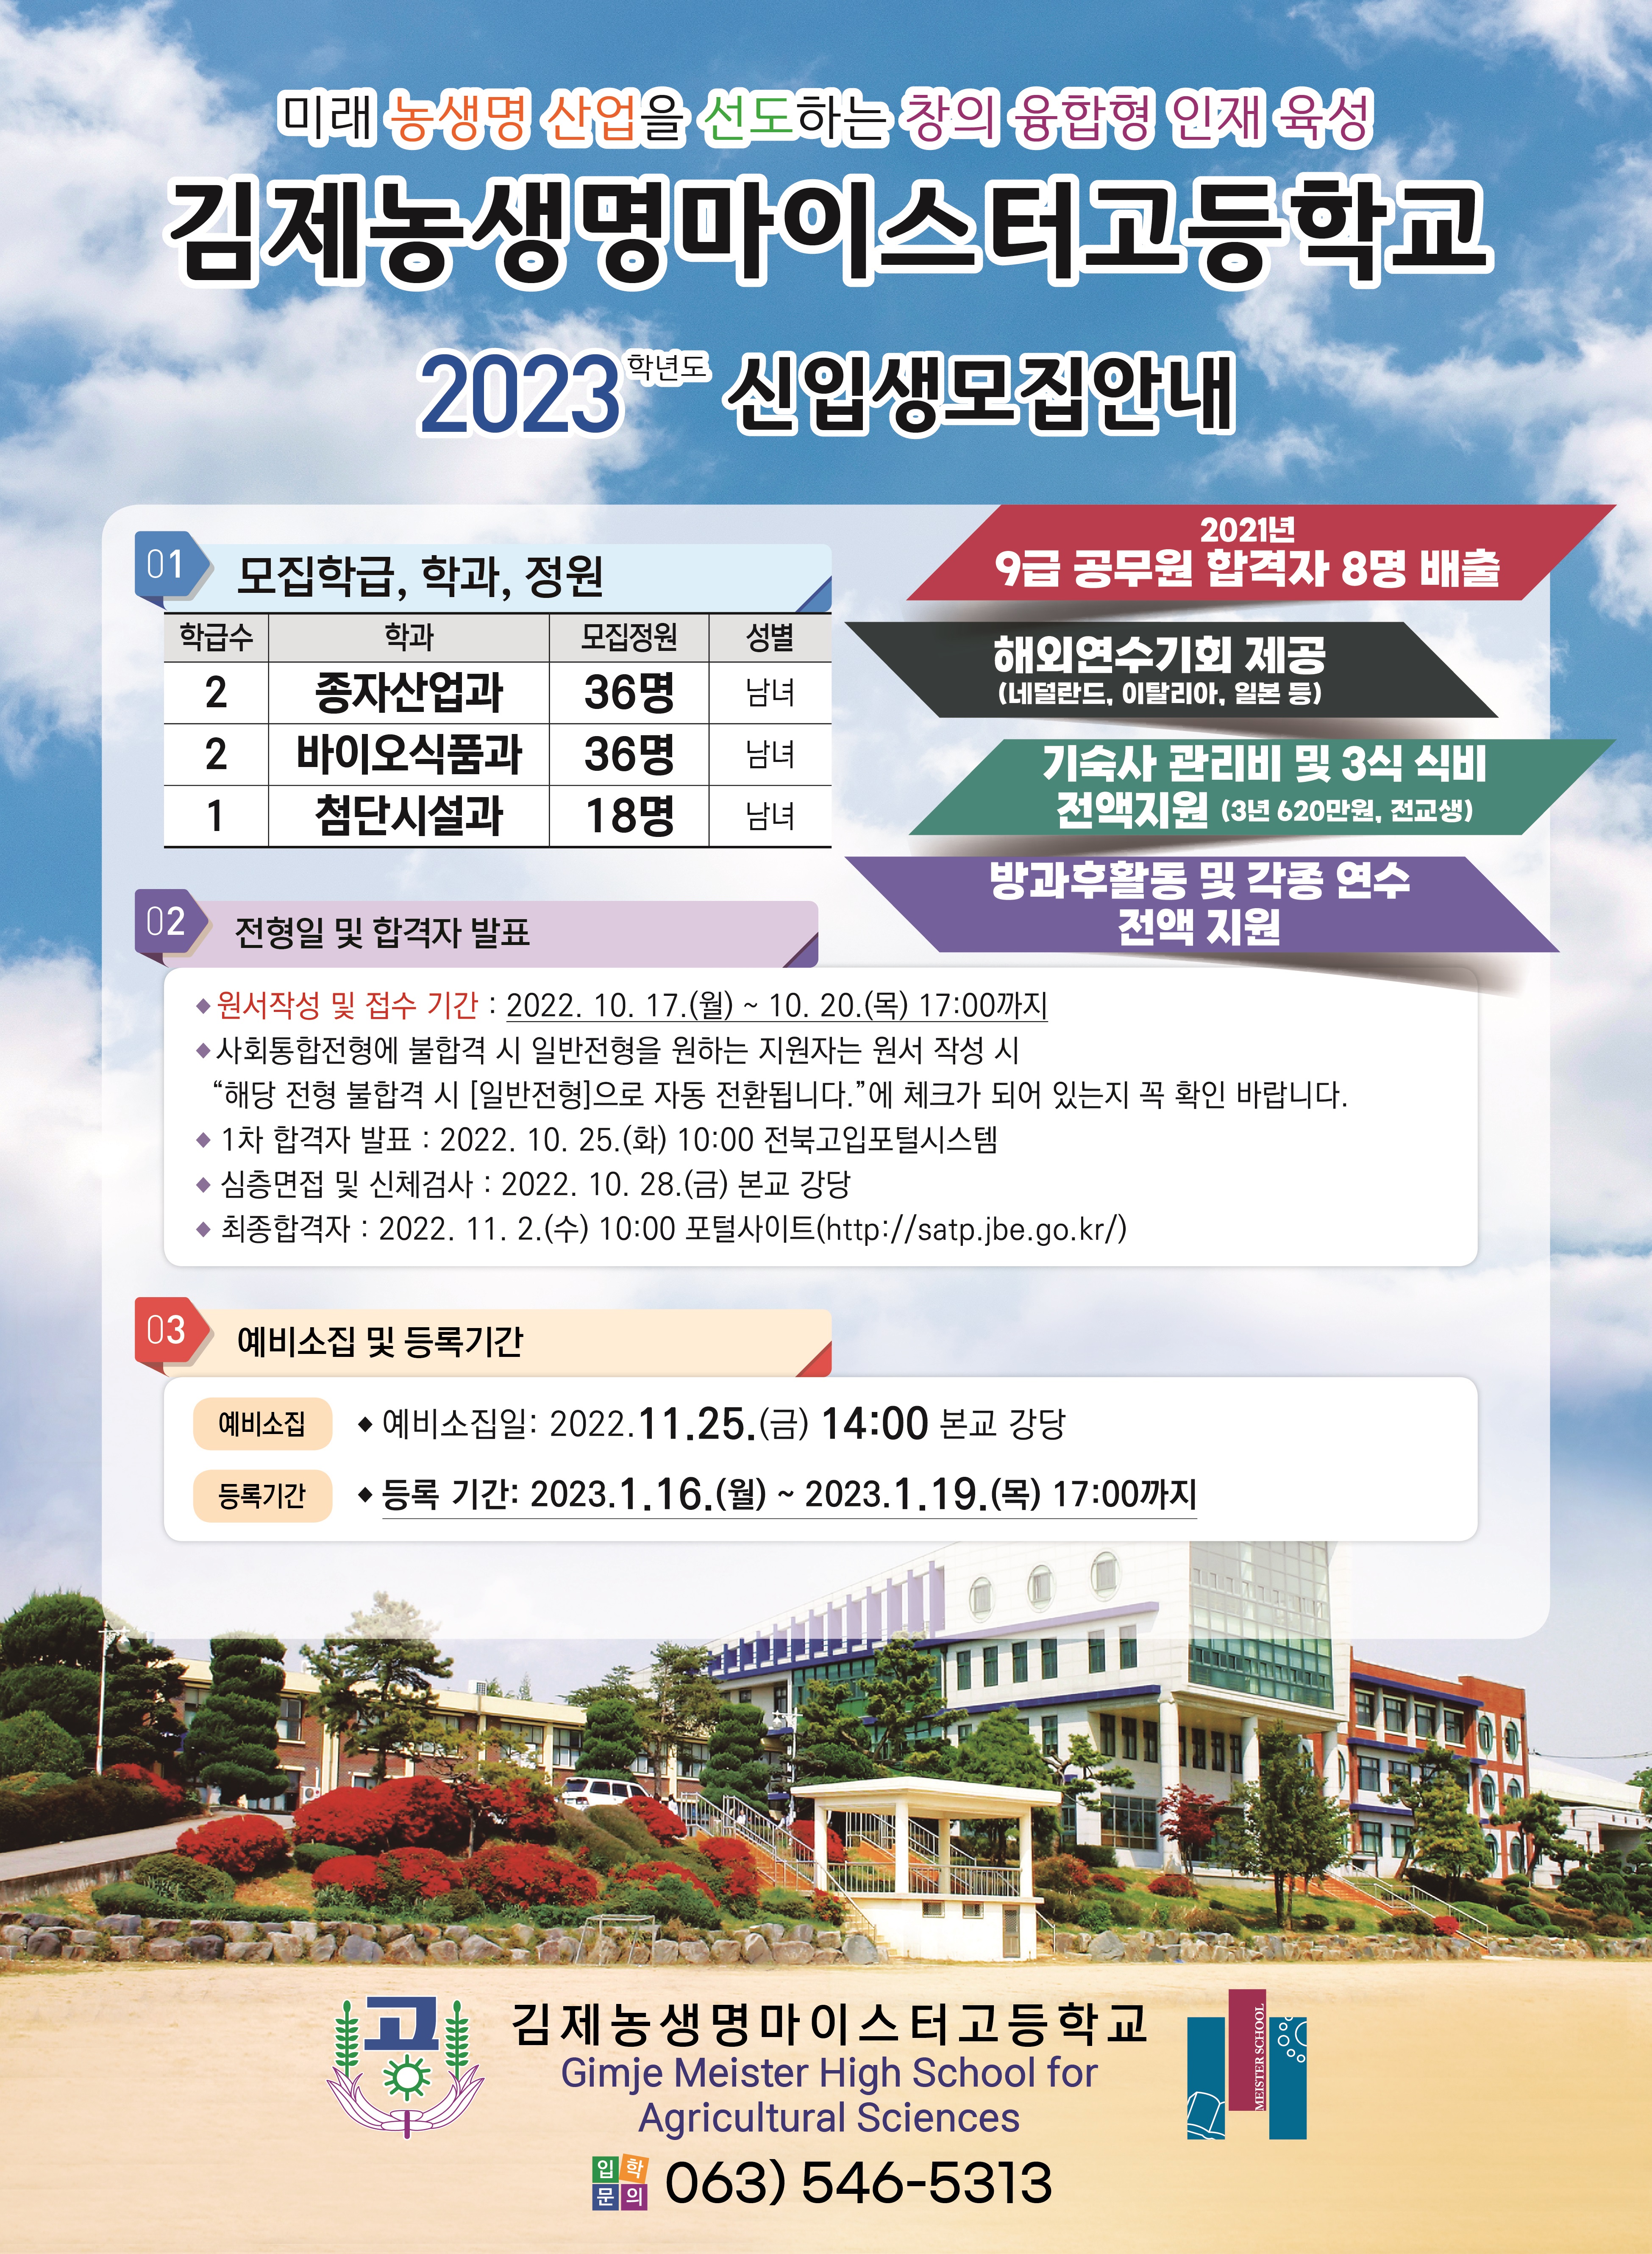 2023학년도 김제농생명마이스터고등학교 신입생 모집 안내 포스터